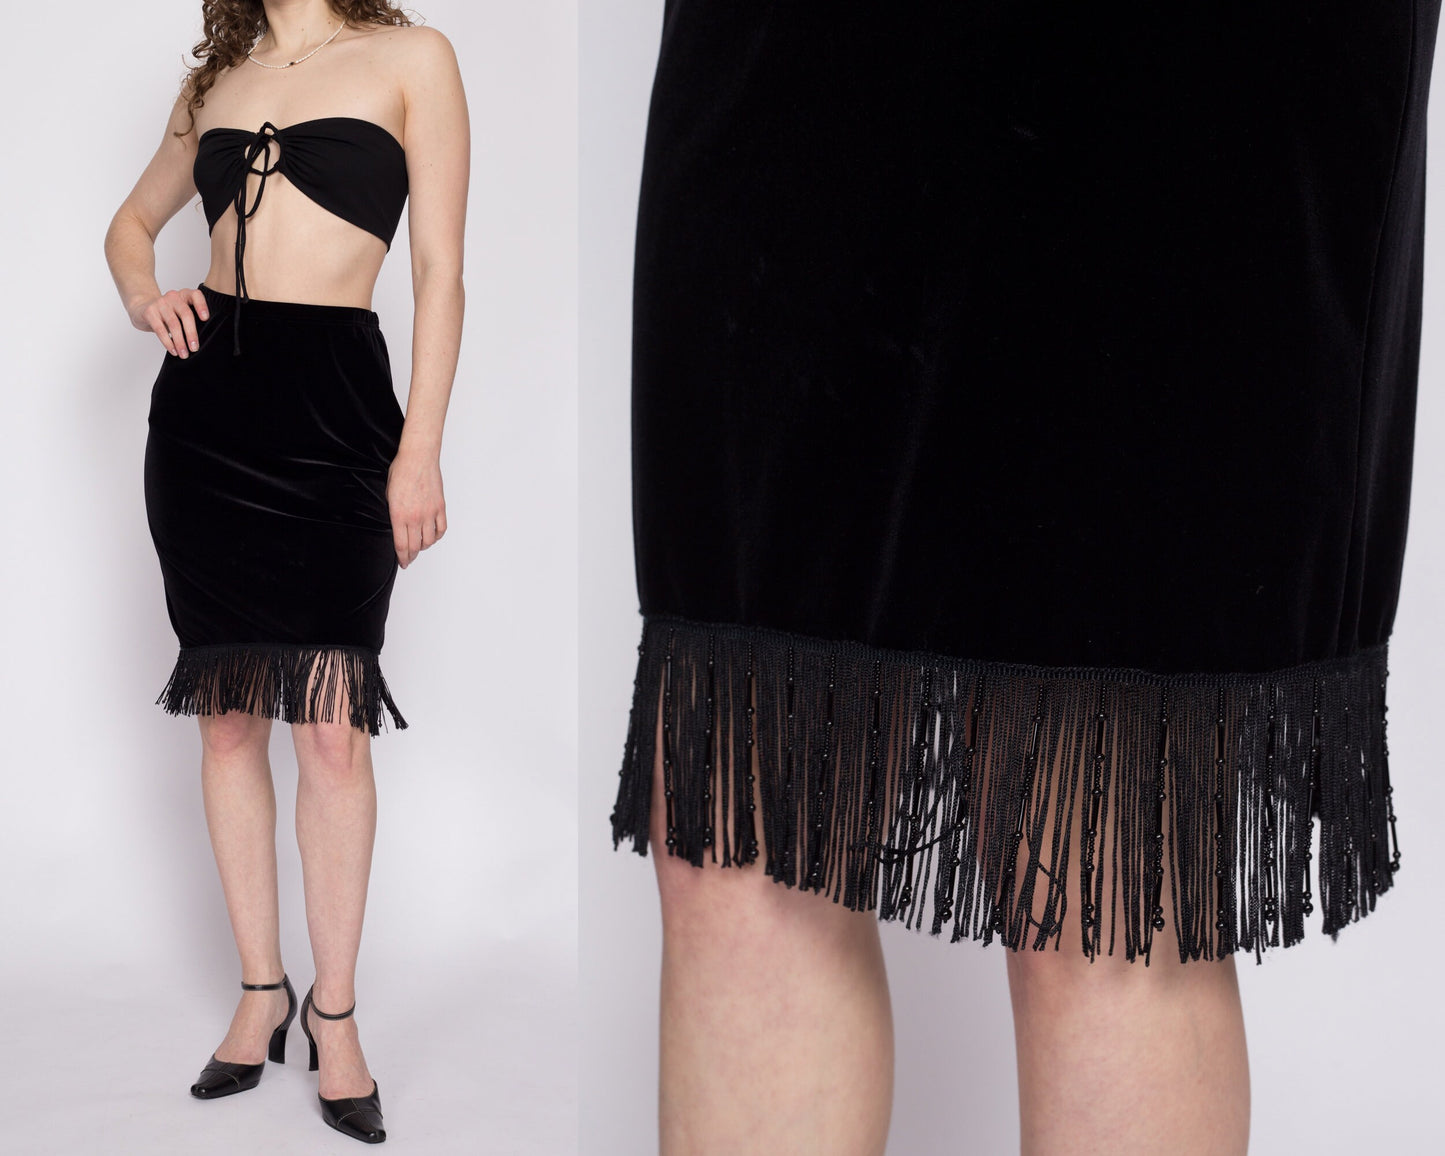 90s Beaded Fringe Black Velvet Mini Skirt - Medium | Vintage High Waisted A Line Knee Length Skirt